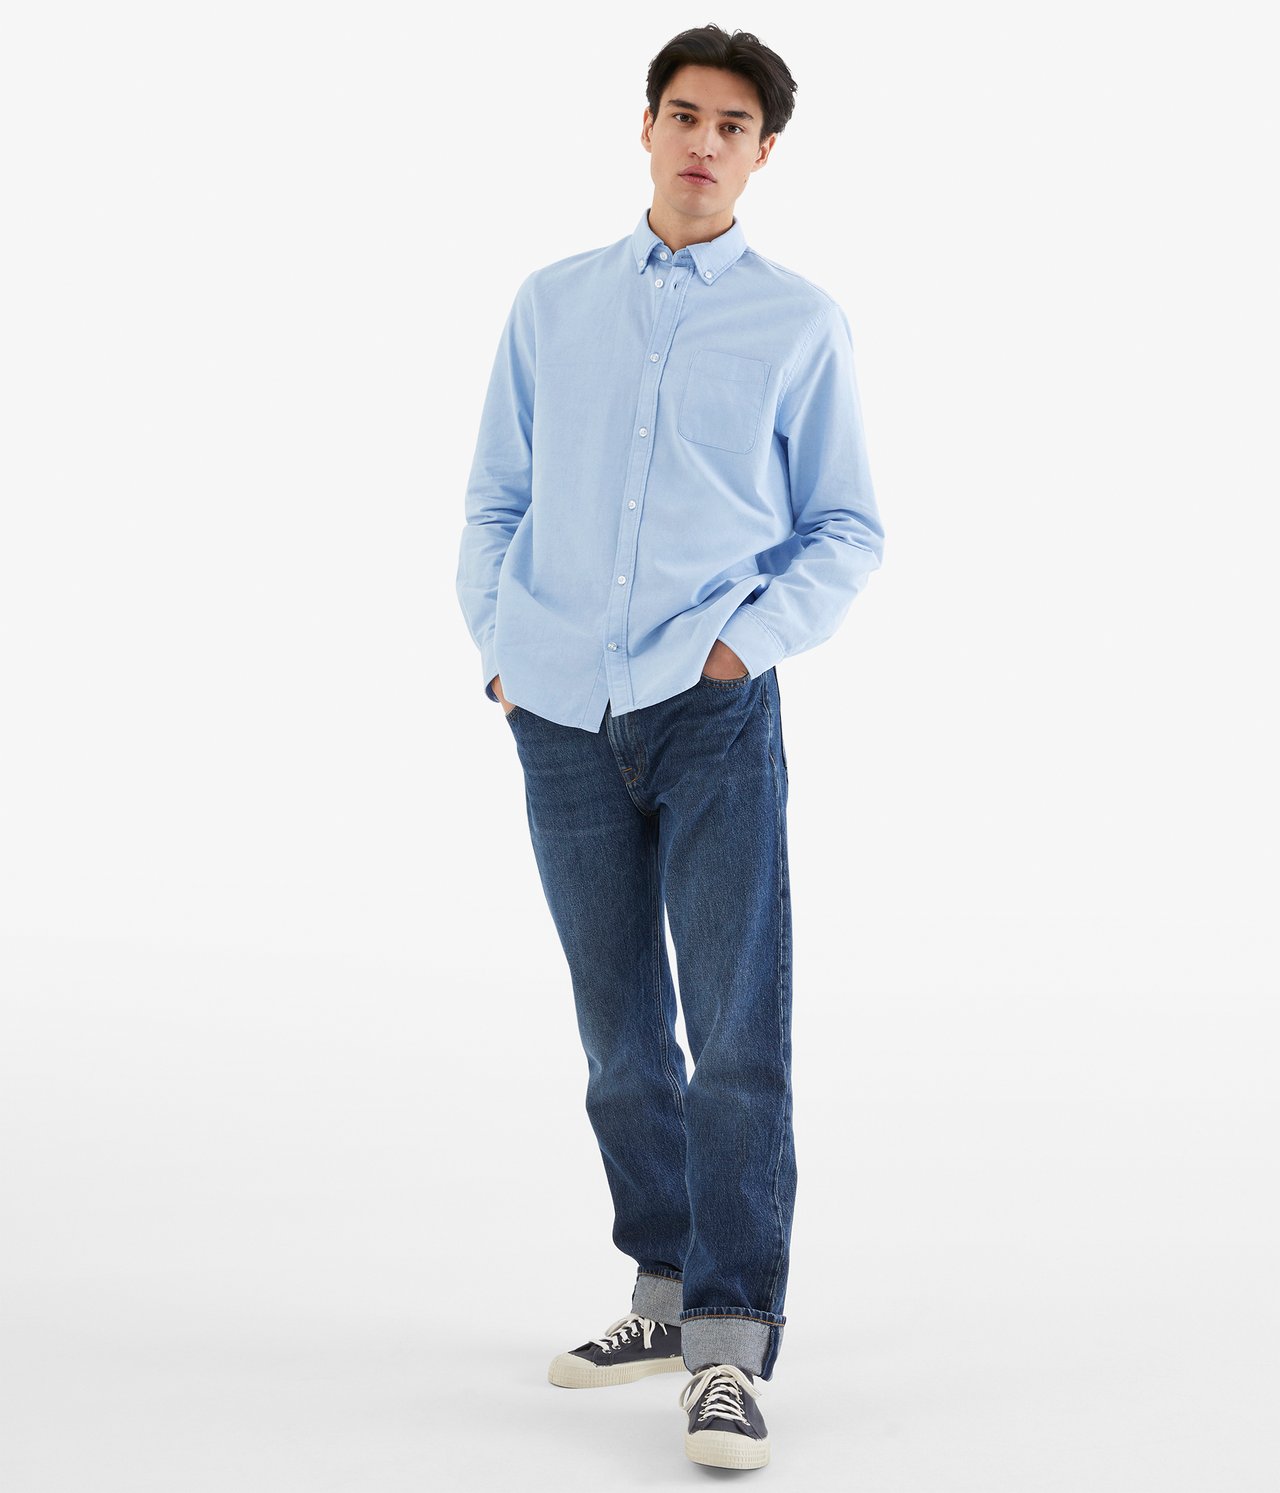 Oxfordskjorte regular fit - Lyseblå - 189cm / Storlek: M - 2